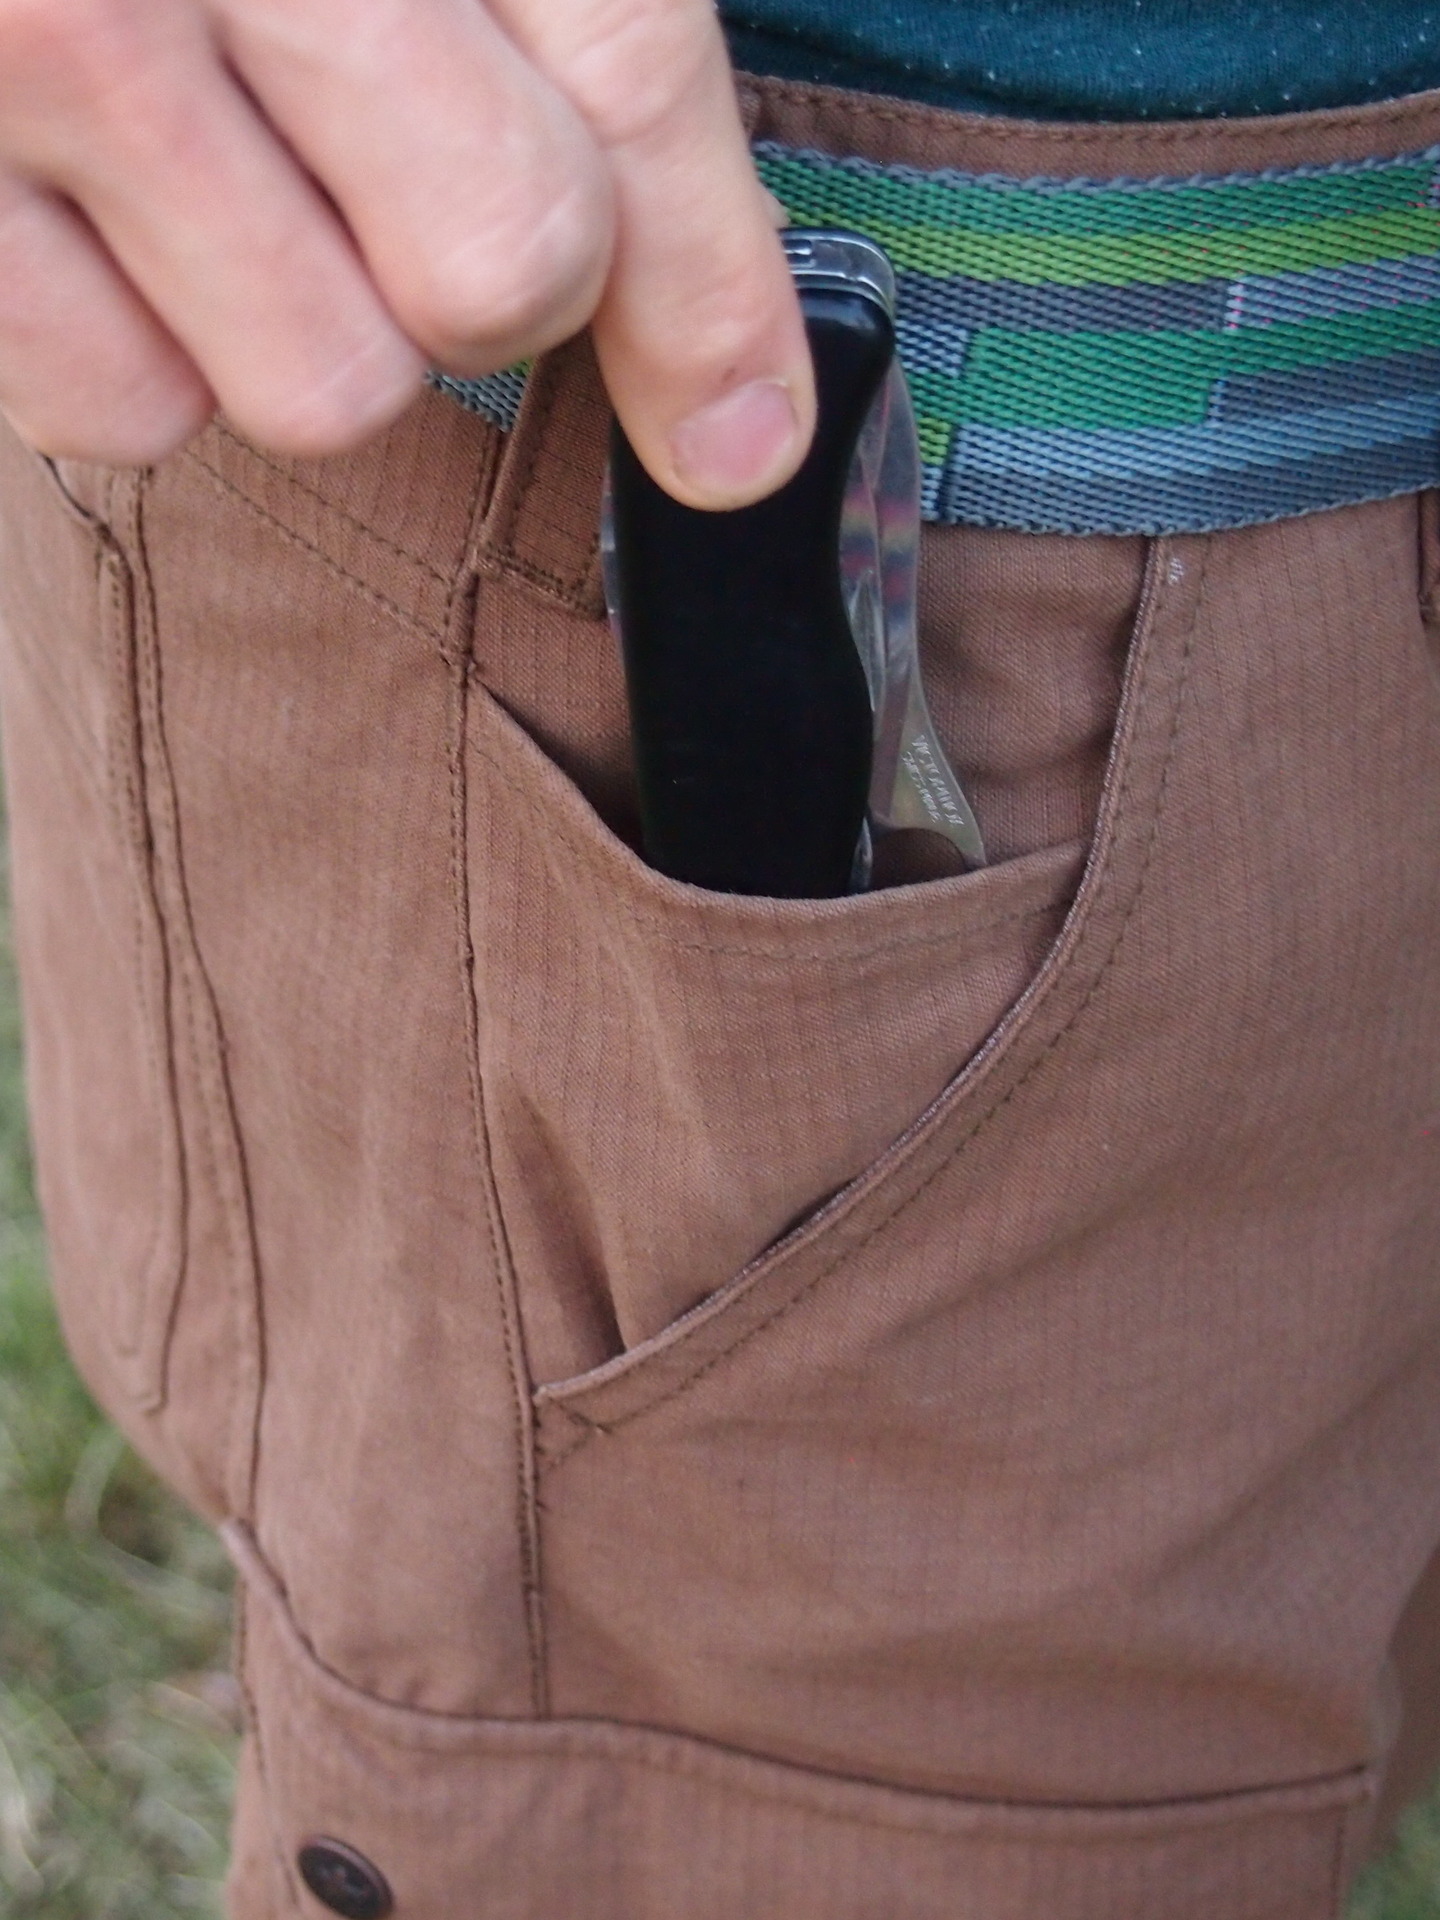 Pánské kalhoty Warmpeace Galt. Do boční kapsy se pohodlně vejde nůž.